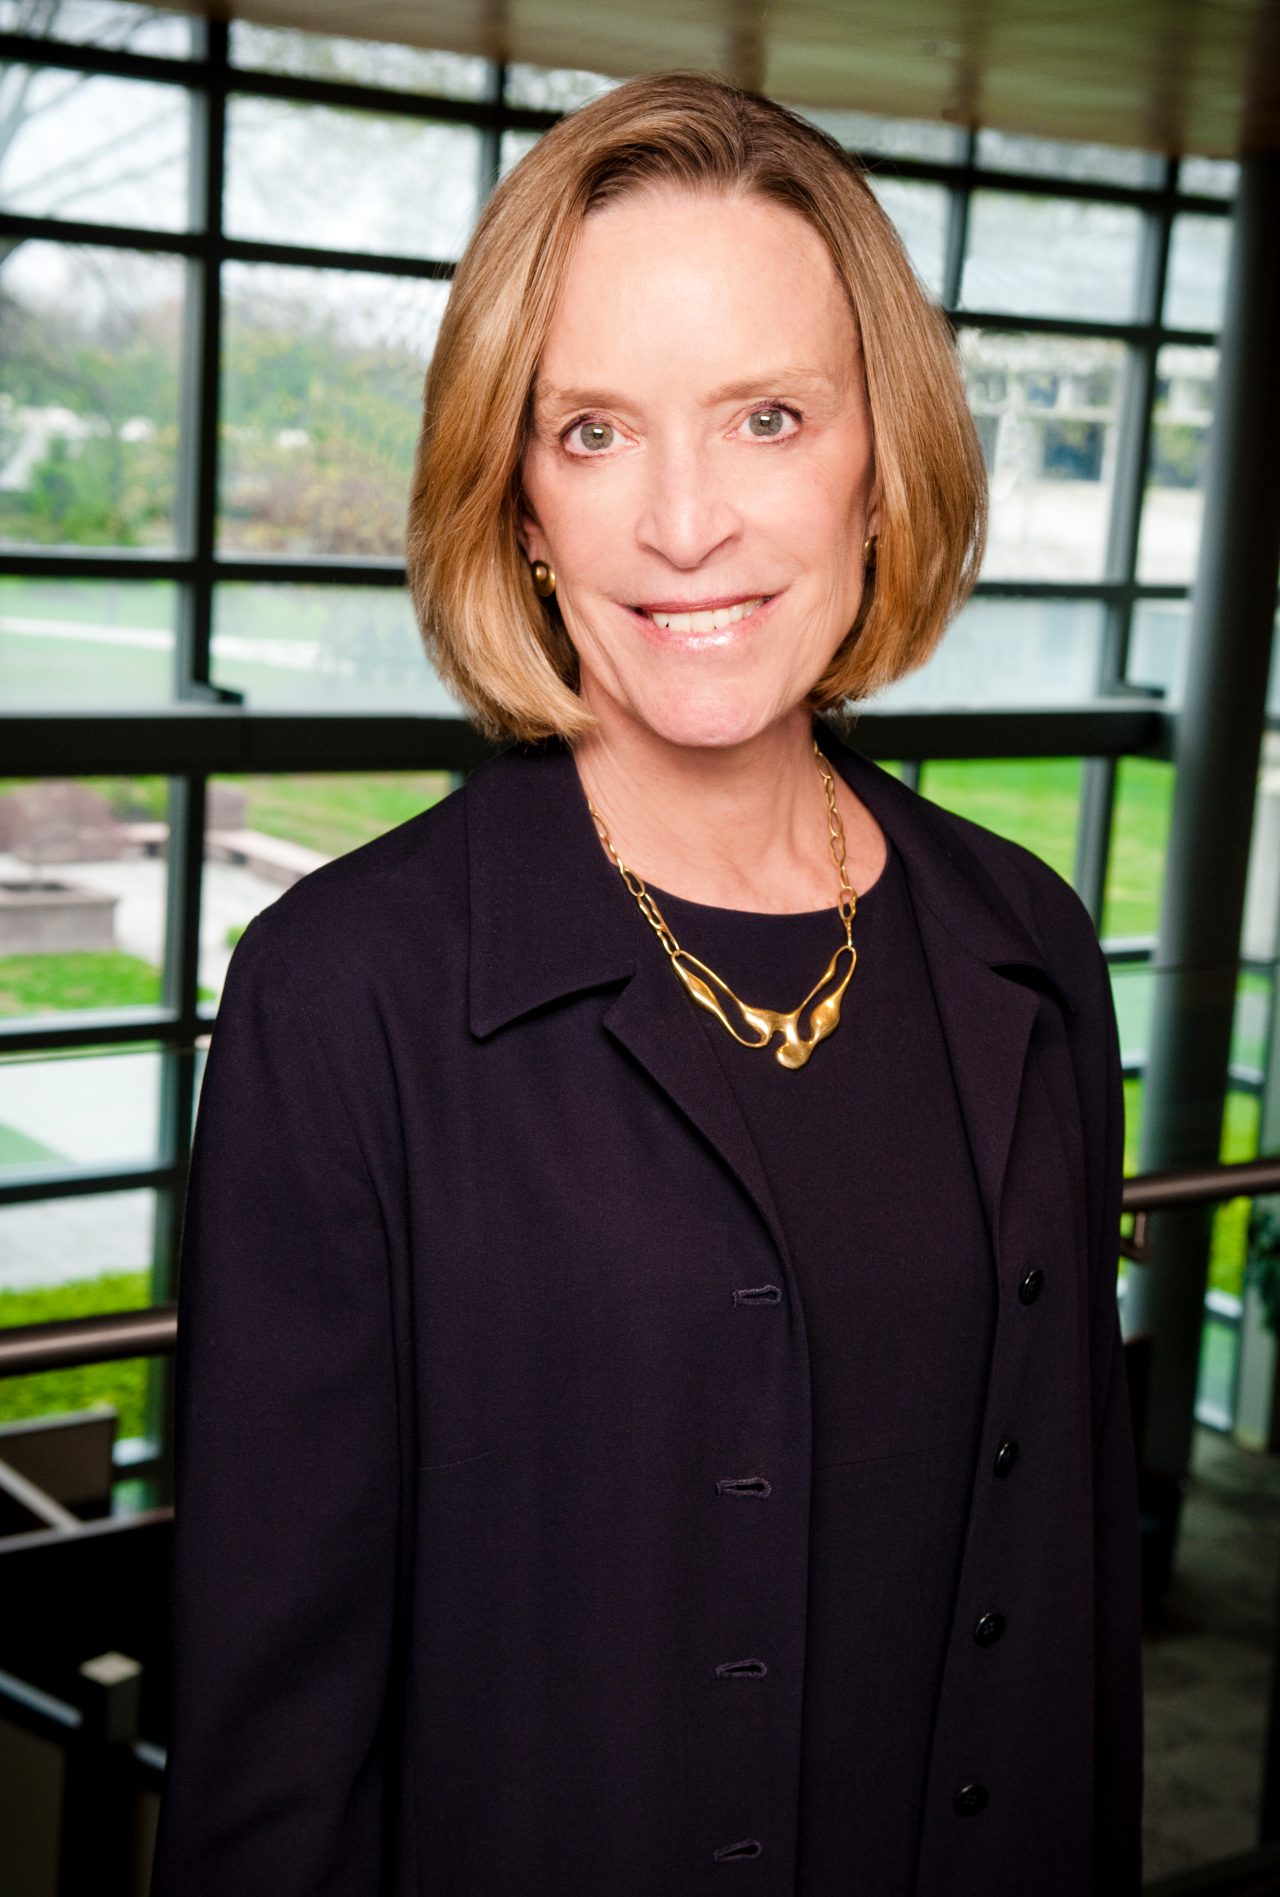 Kathryn S. Fuller, Trustee of the Robert Wood Johnson Foundation